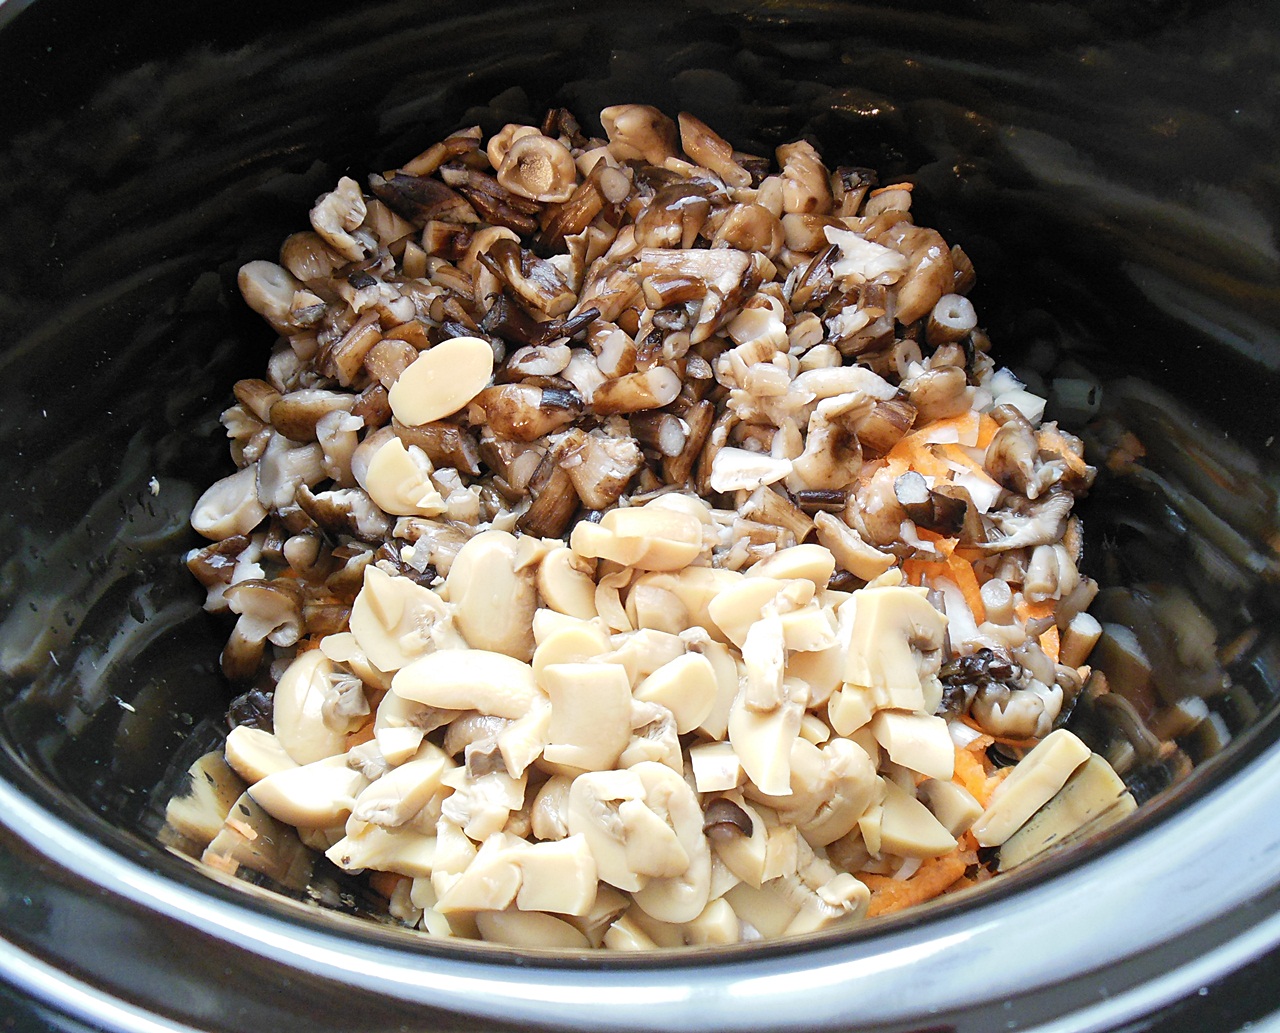 Tocanita cu ghebe si ciuperci la slow cooker Crock-Pot 4,7 L